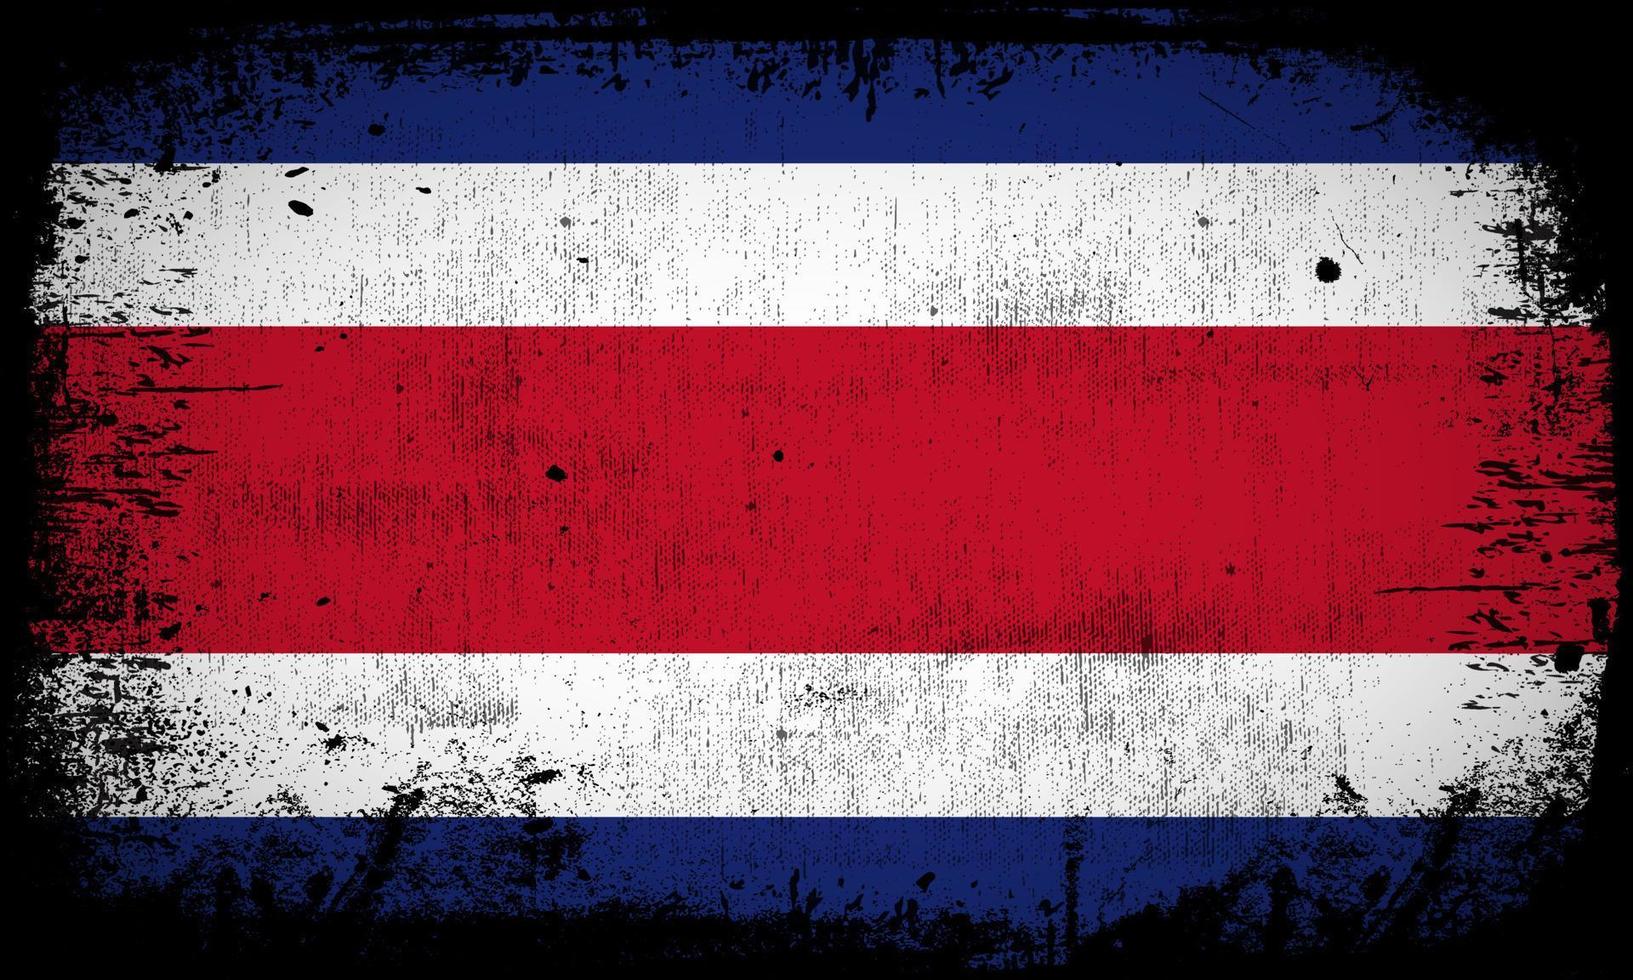 nouveau vecteur abstrait de fond de drapeau costa rica avec style de trait grunge. illustration vectorielle de la fête de l'indépendance du costa rica.